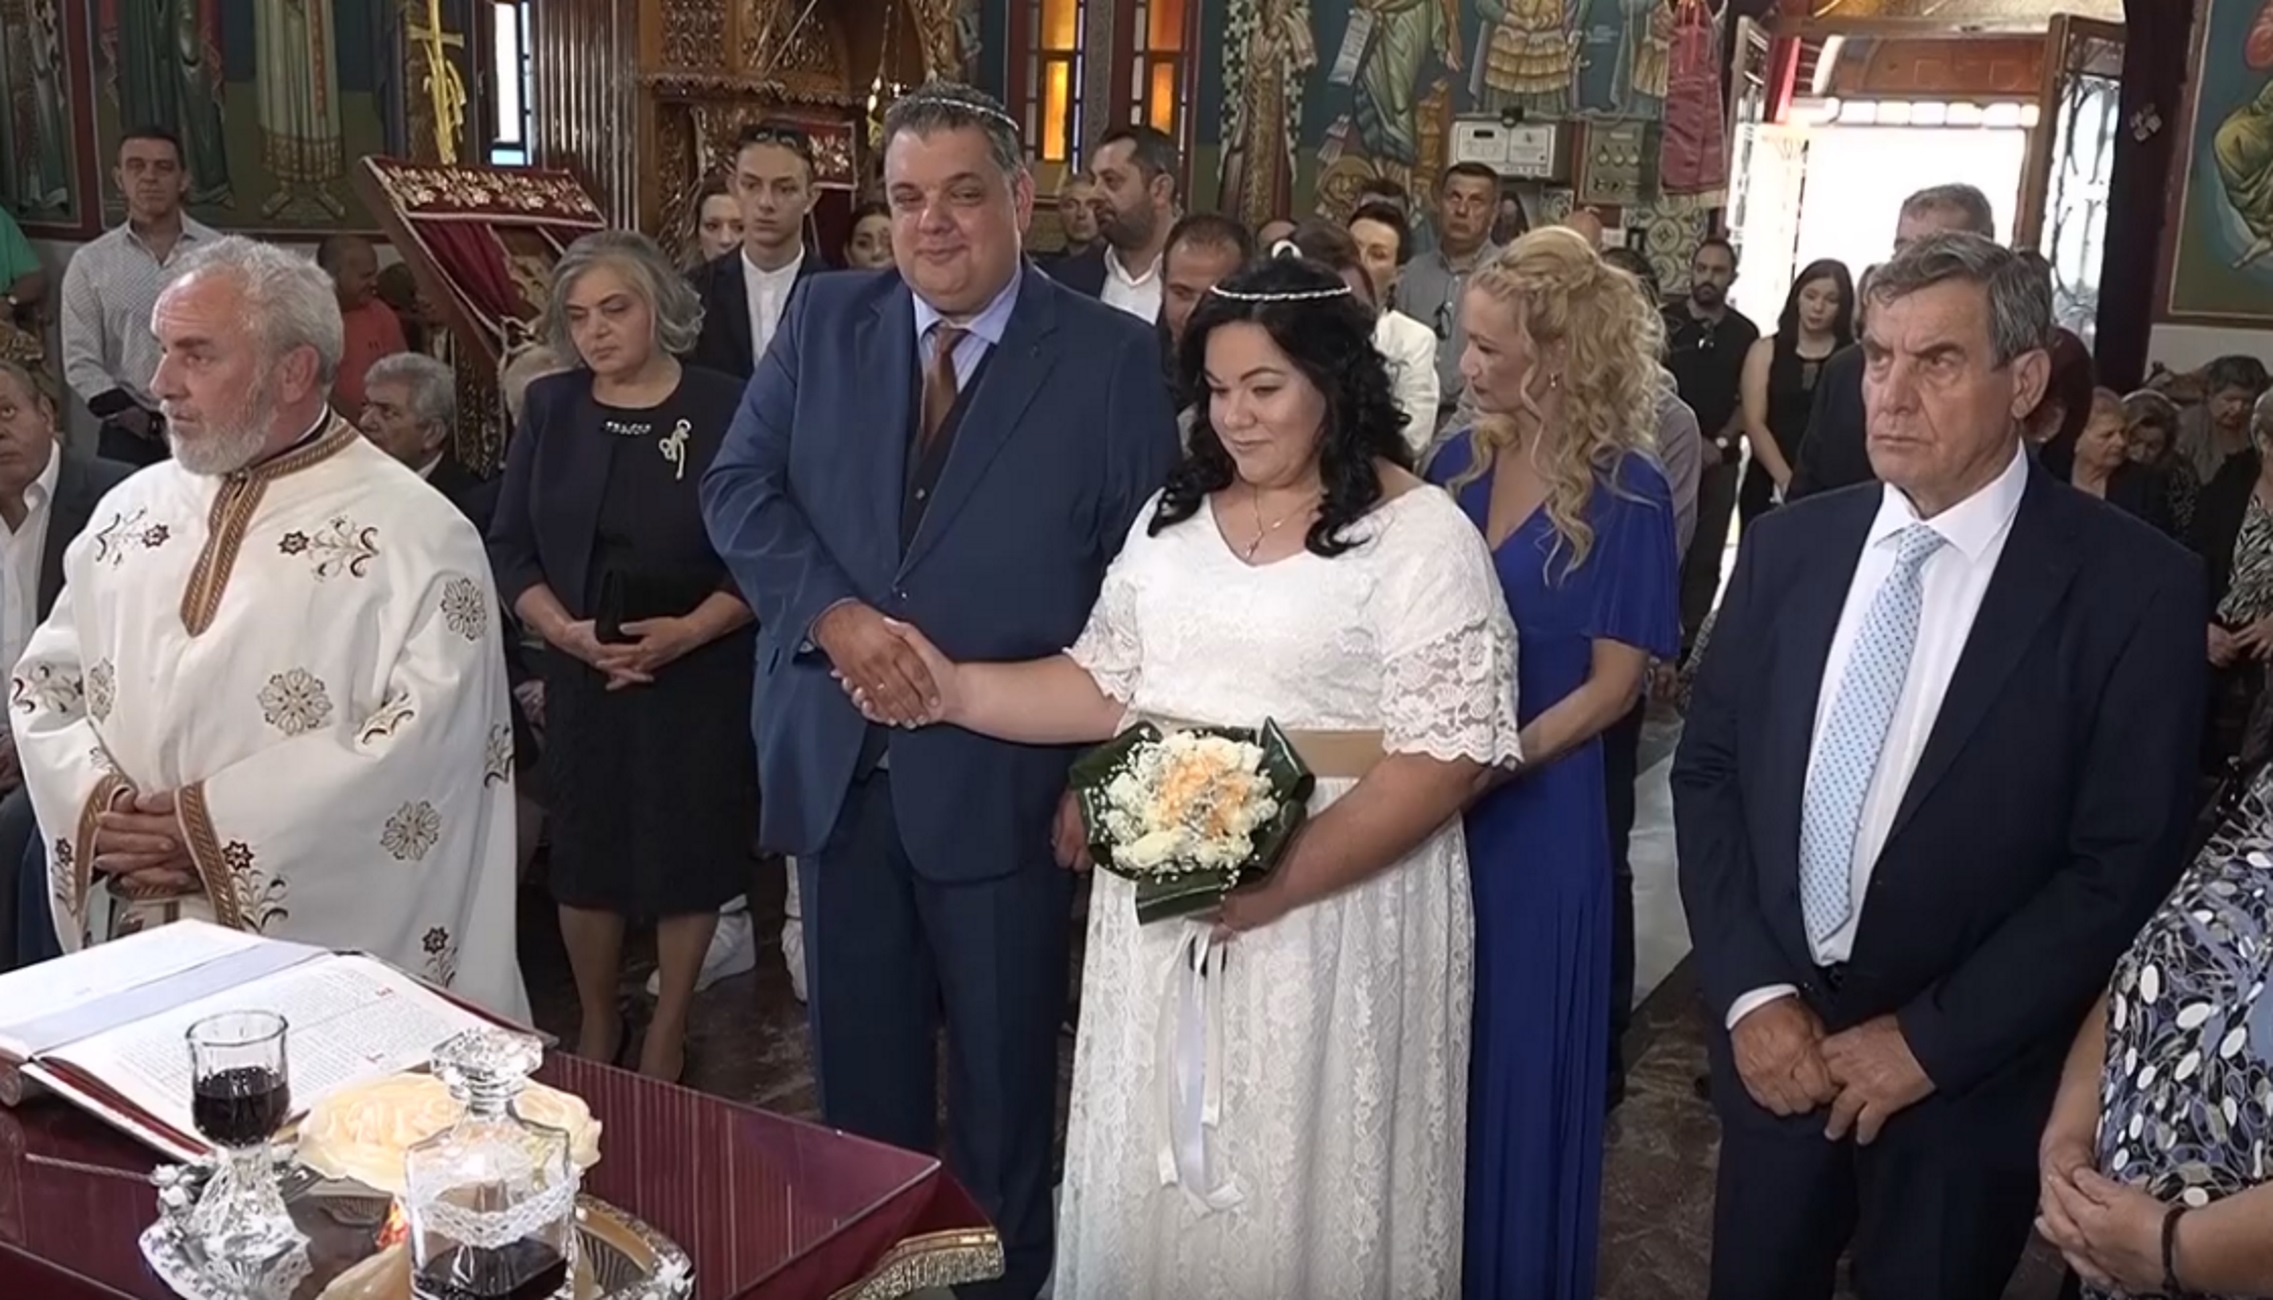 Βόλος: Η νύφη άκουσε το “η δε γυνή να φοβήται τον άντρα” και έκανε κάτι που δεν περίμενε κανείς – video